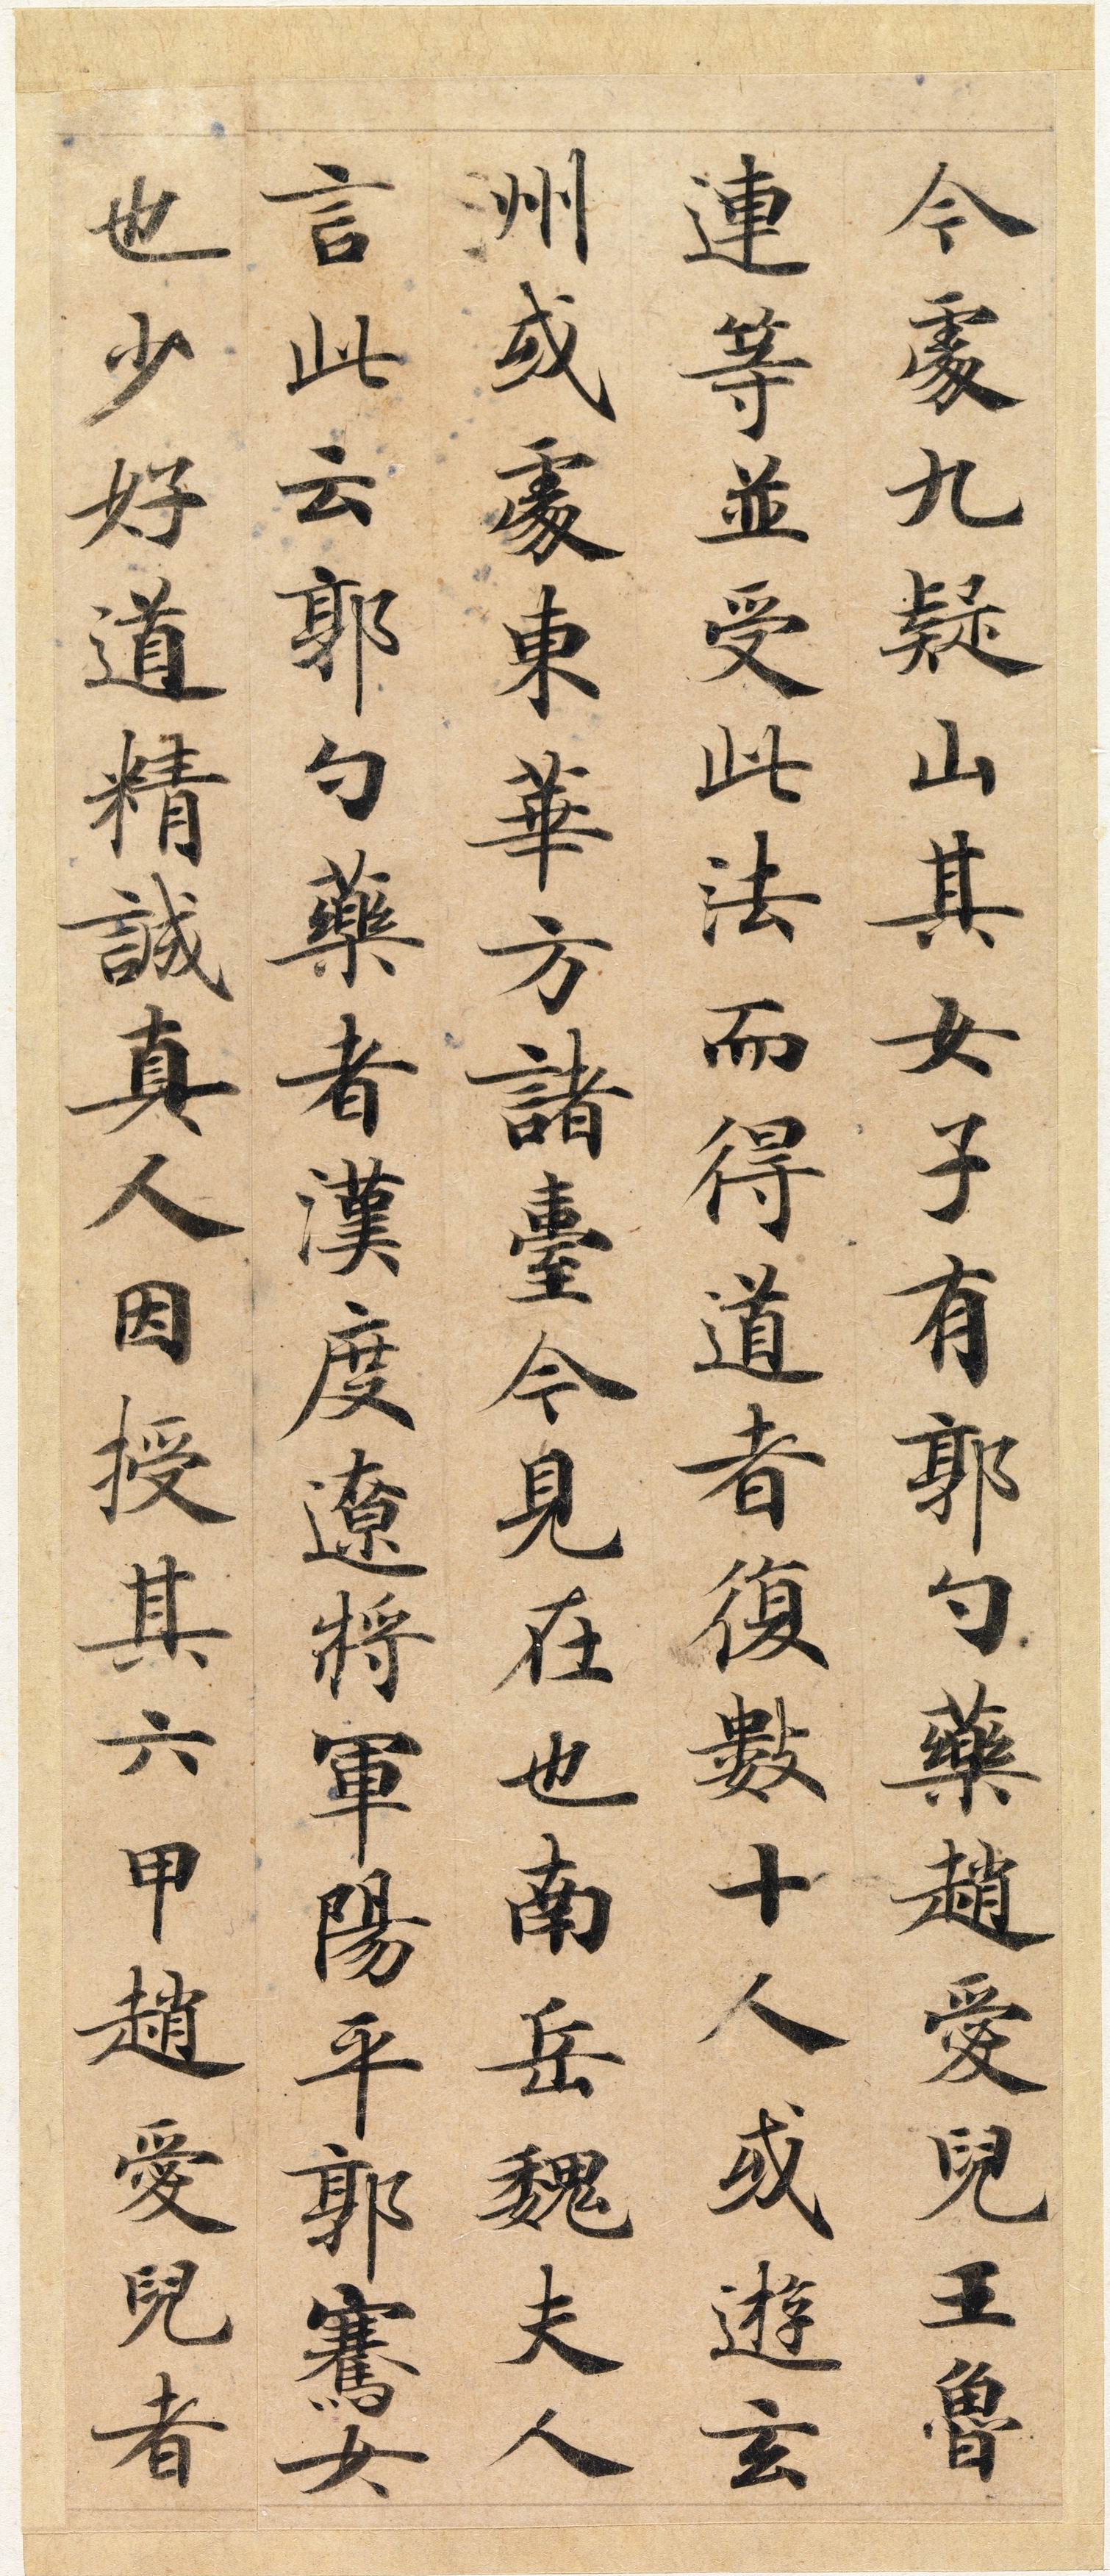 唐《灵飞经》渤海藏真本石刻版和43行墨迹本